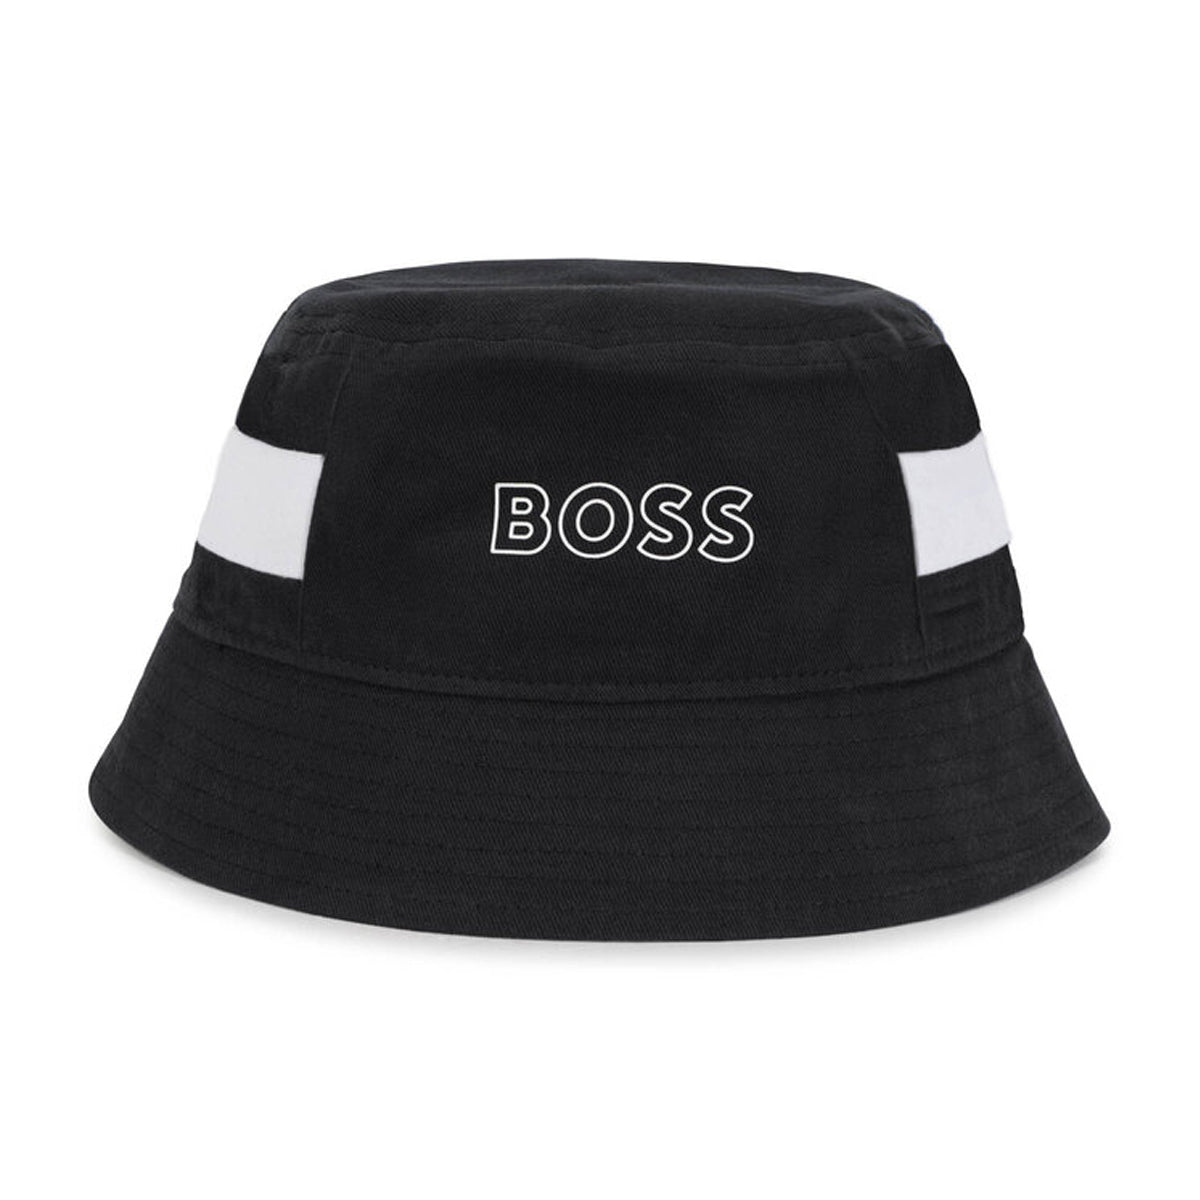 כובע דלי BOSS הדפס לוגו לילדים